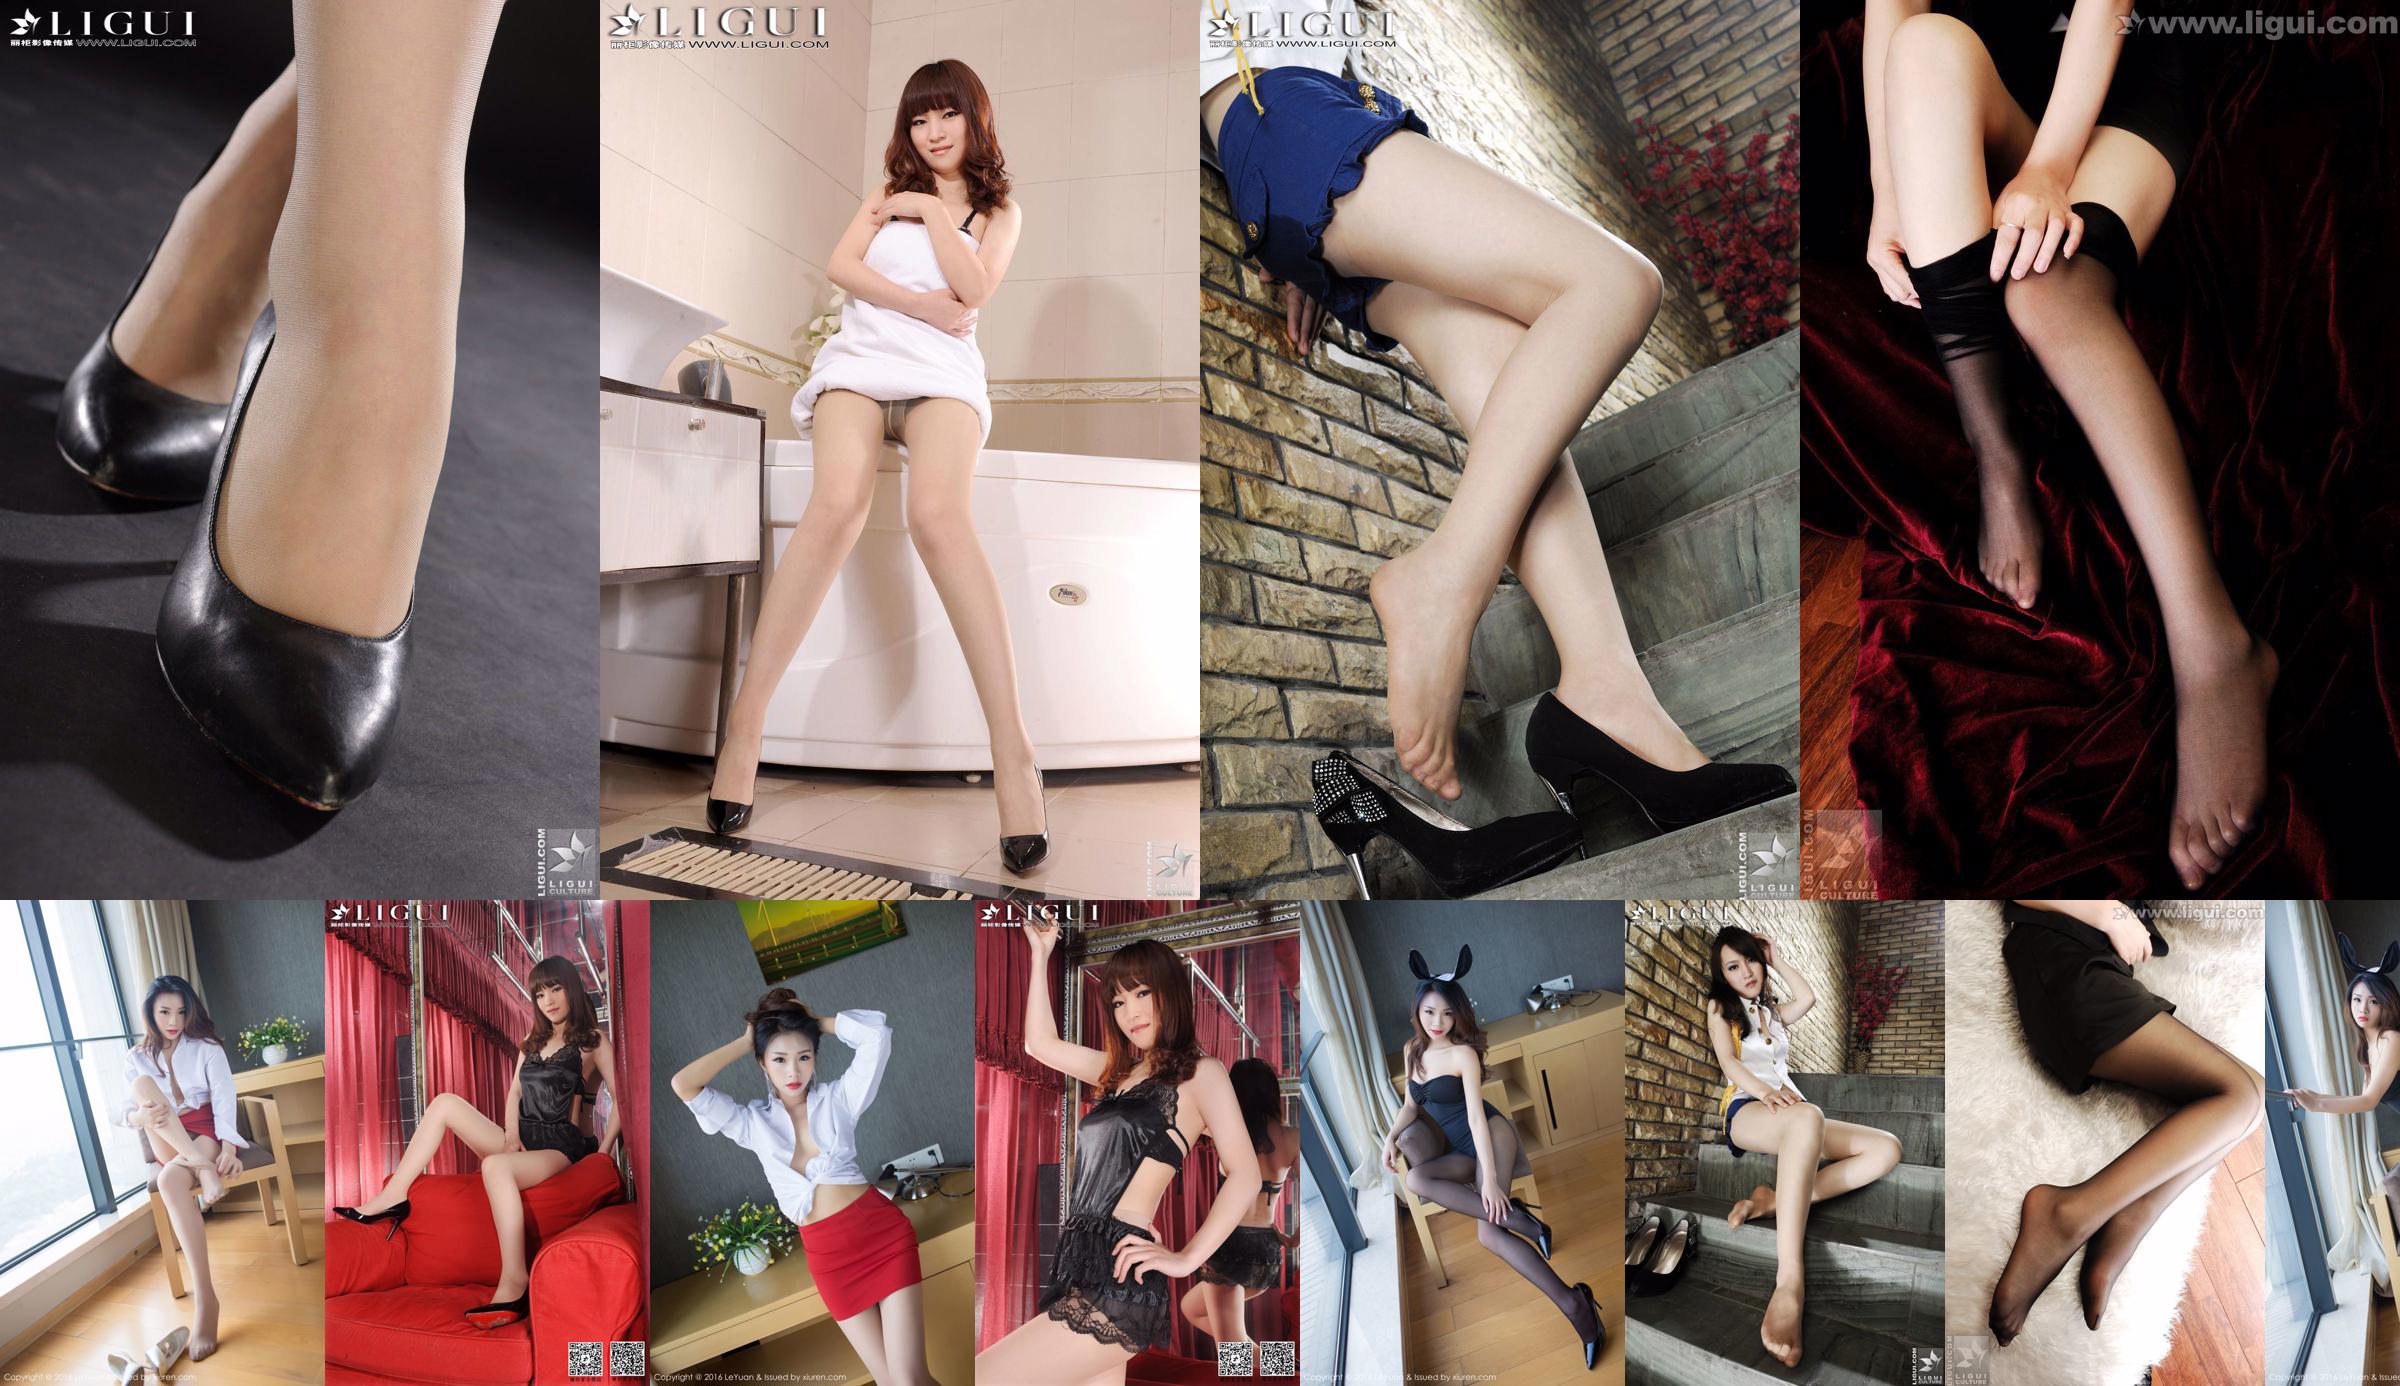 Người mẫu Tina "Indoor Charming Stunner" [丽 柜 LiGui] Ảnh chân dài ngọc nữ No.1c07b5 Trang 1